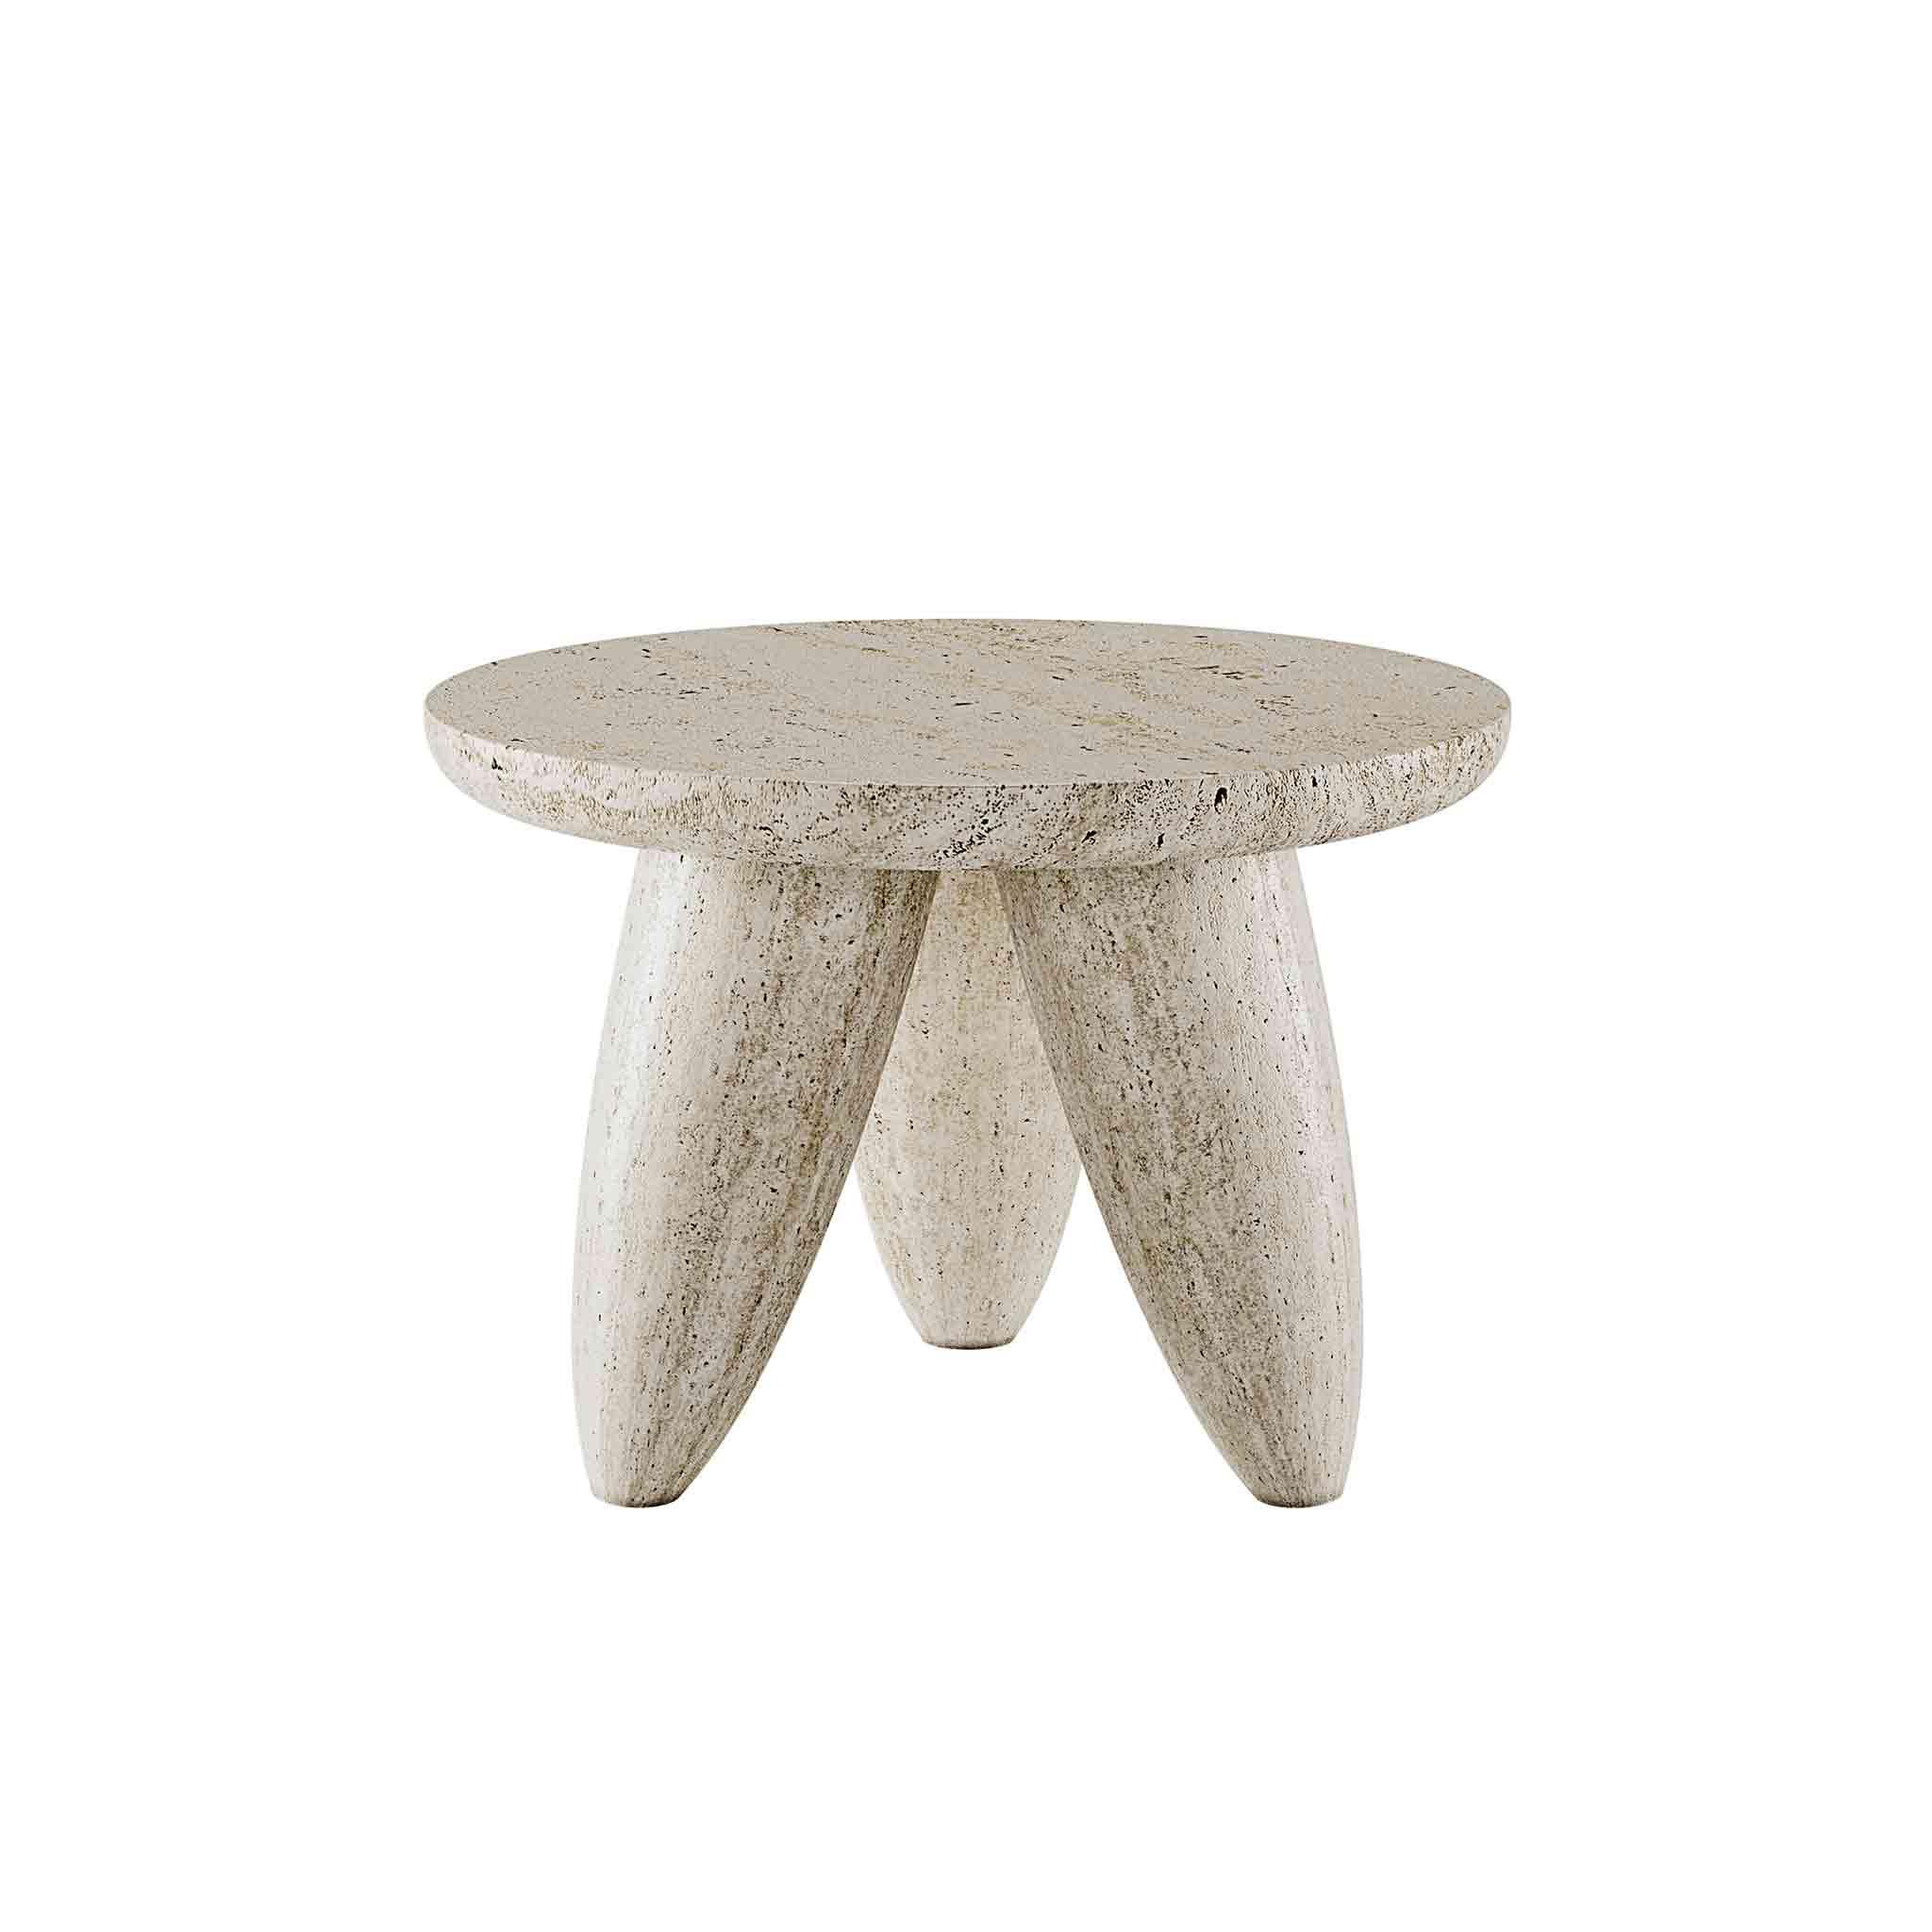 La table d'appoint moyenne Lunarys est une pièce de design moderne exceptionnelle. Une table d'appoint clé pour un projet de salon contemporain semble venir directement de l'espace. La pierre de travertin est parfaite pour les projets d'intérieur ou